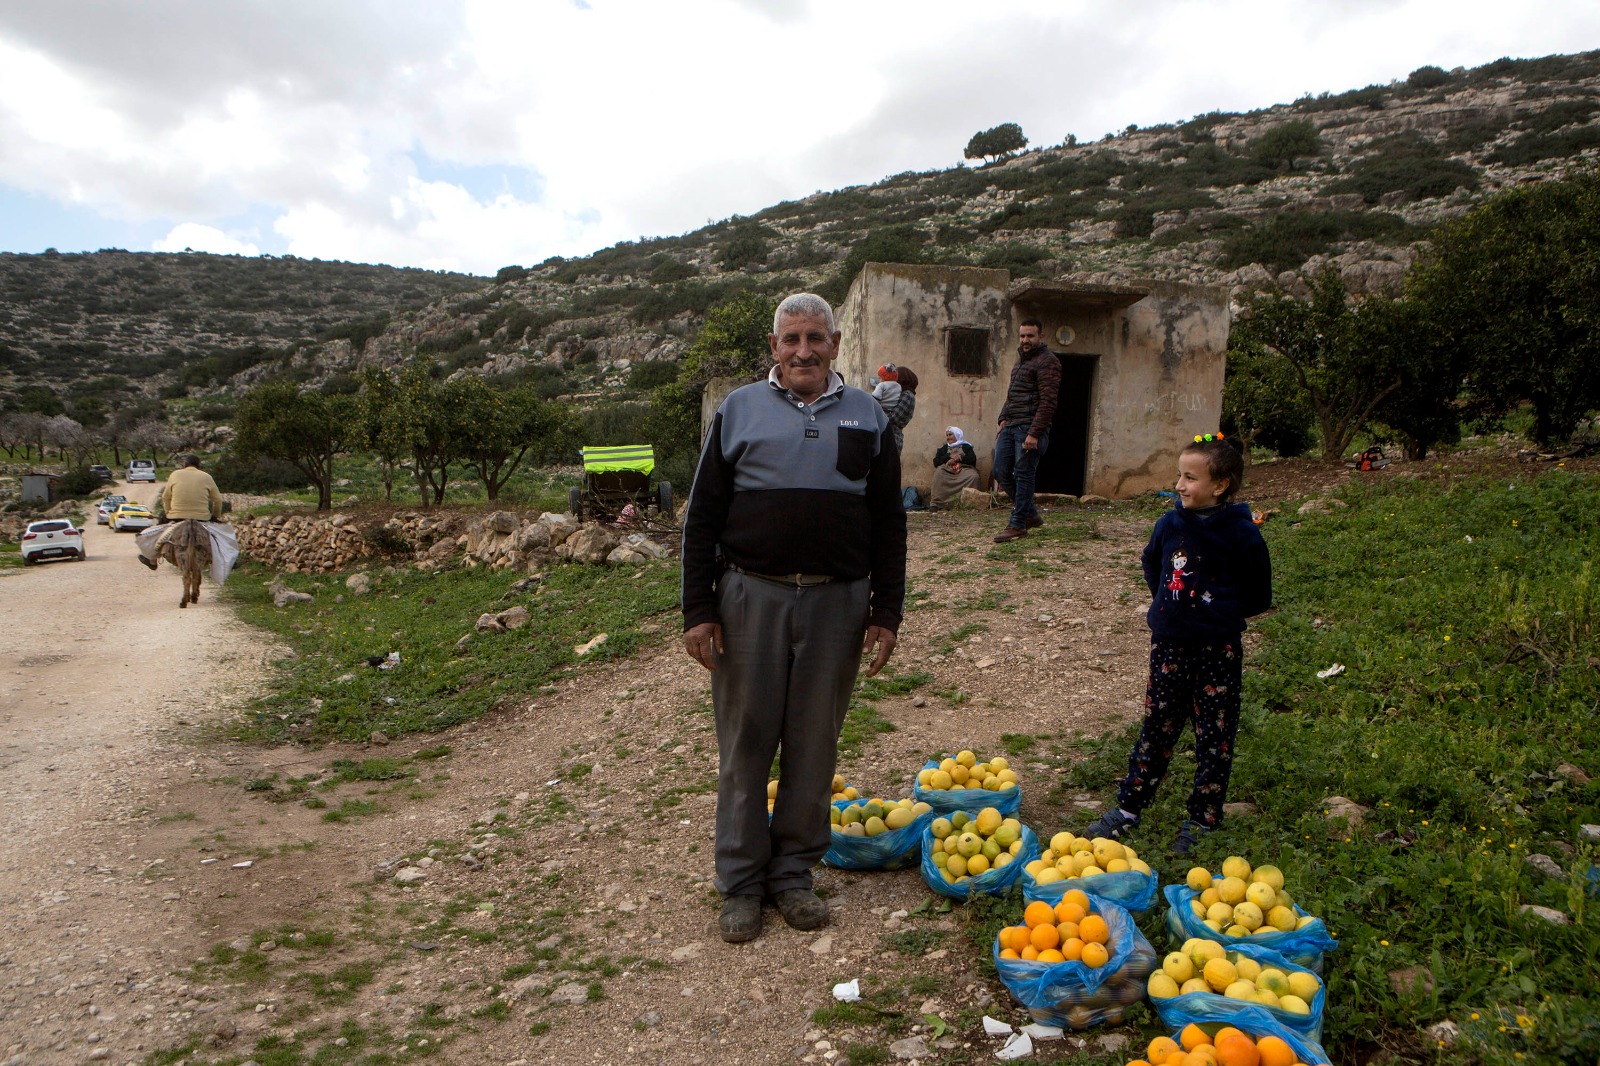 הפלסטינים עיצבו את הנוף במשך מאות שנים. משפחה פלסטינית בוואדי קנה (צילום: אן פק / אקטיבסטילס)